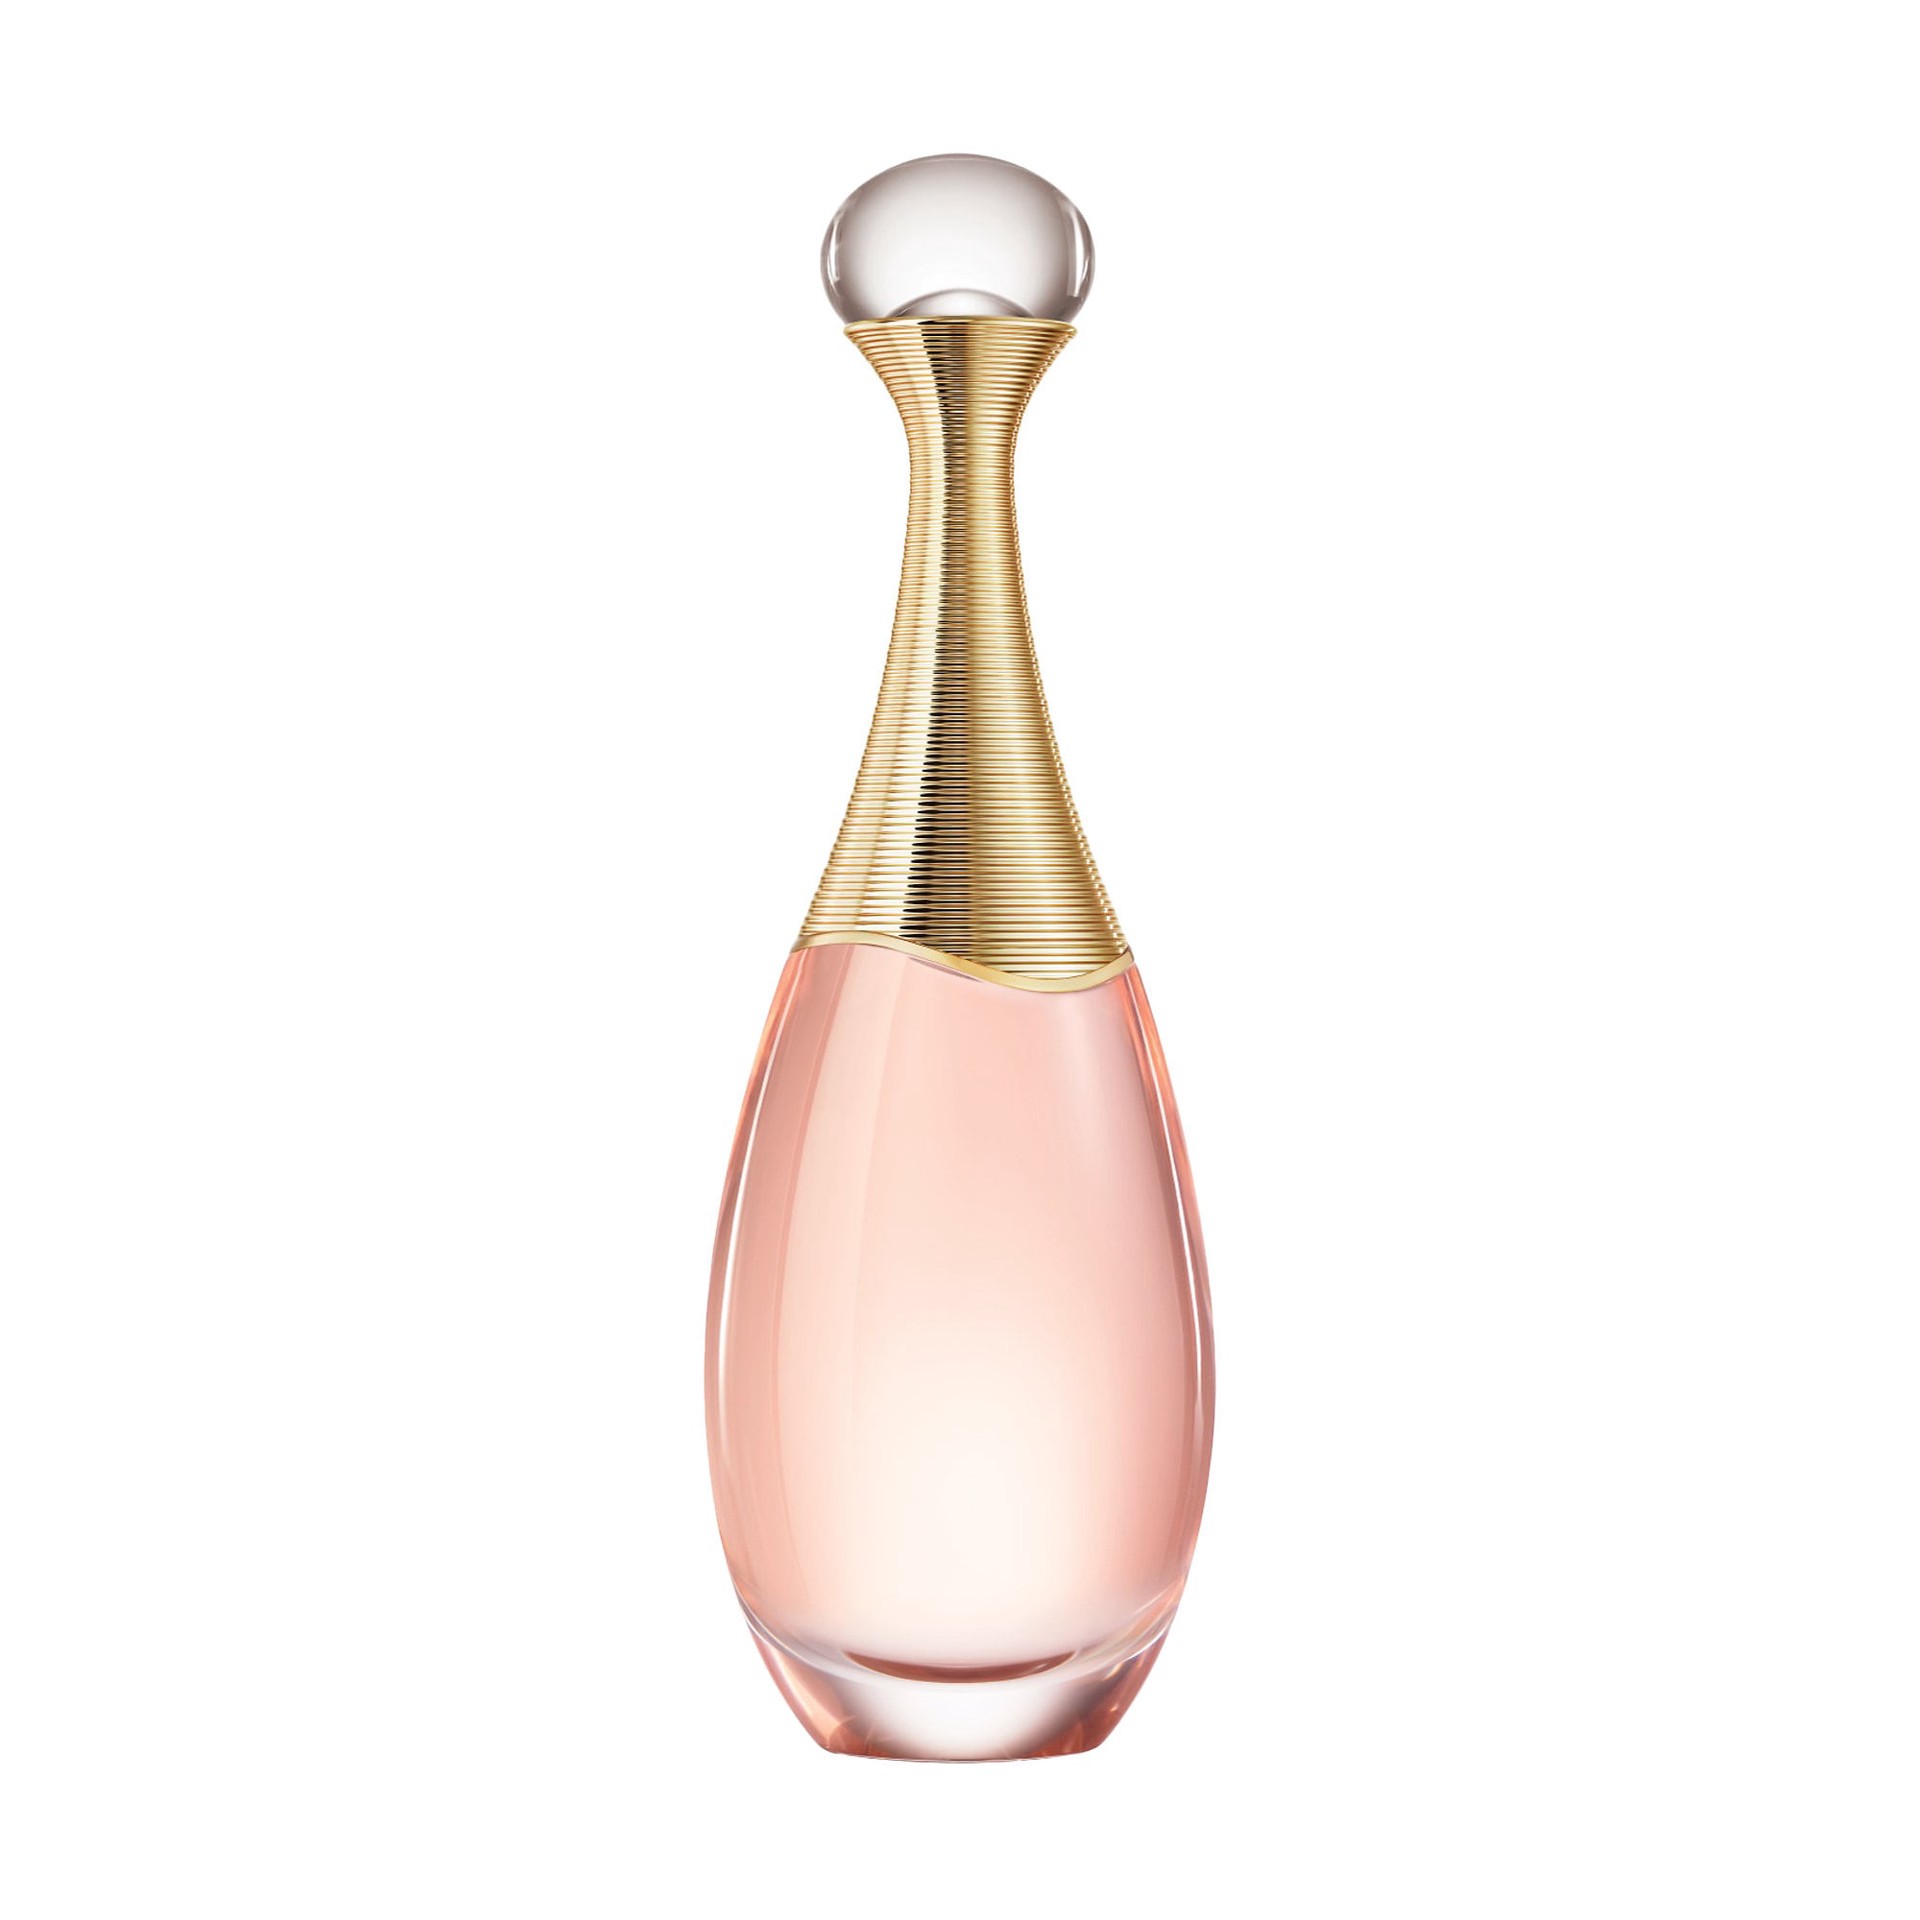 Dior J'Adore Eau Lumiere Eau de Toilette Spray, Perfume for Women, 1.7 Oz 